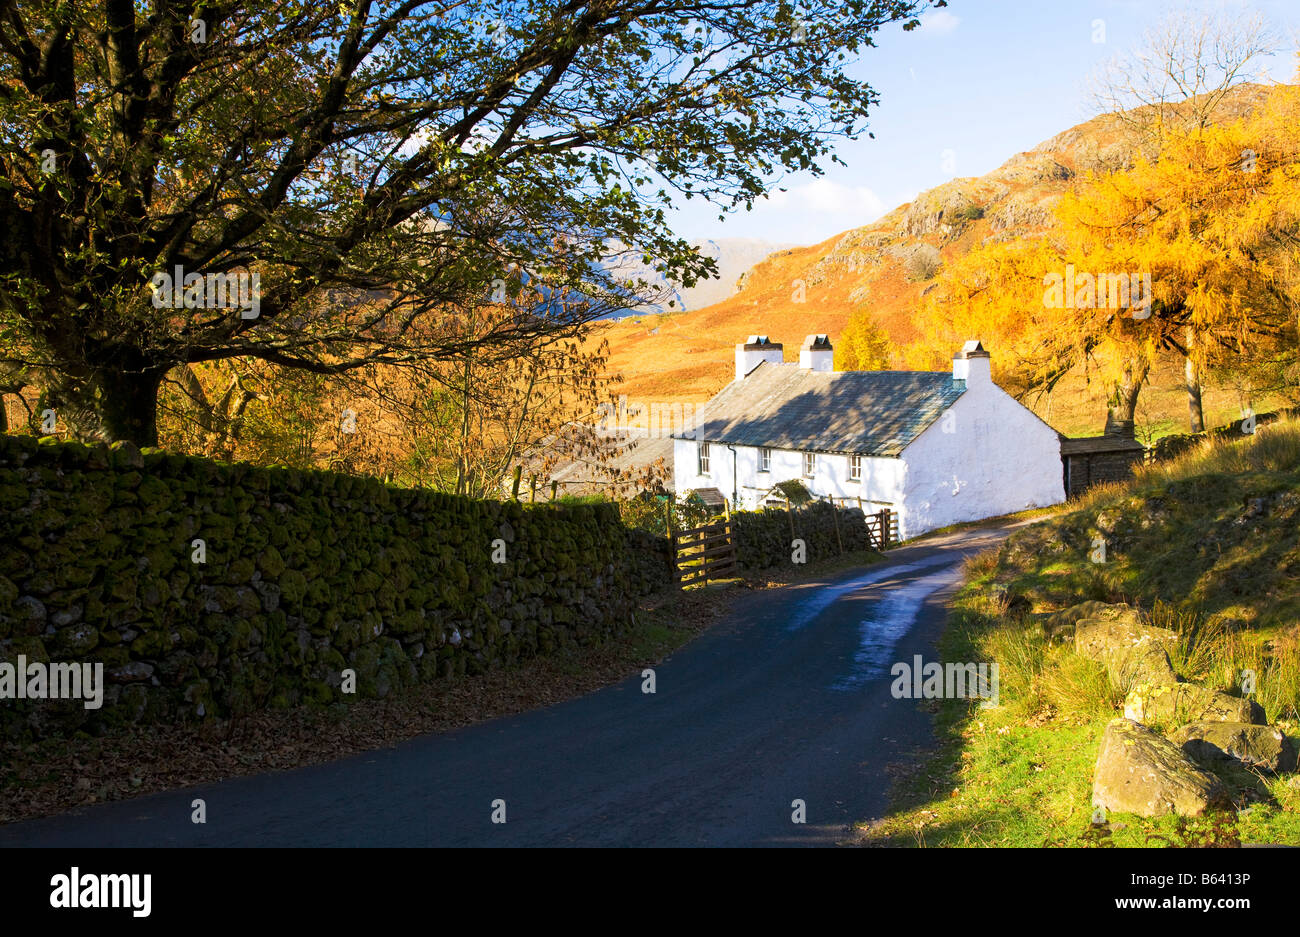 Gîte rural chalet typique blanchi à la chaux à l'automne le soleil dans le Parc National du Lake District, Cumbria, England, UK Banque D'Images